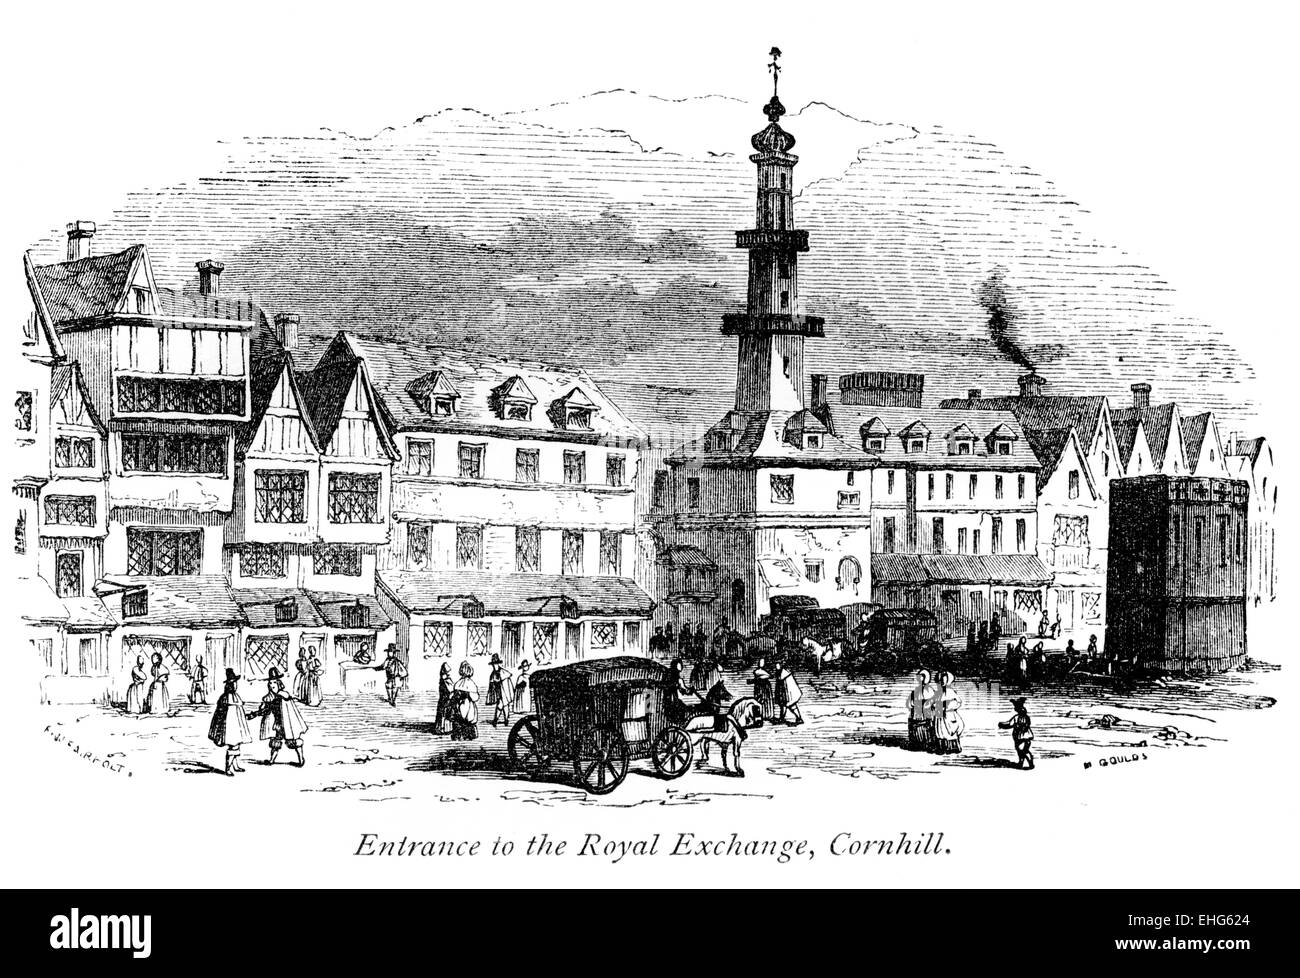 Eine Gravur des Eingangs zur Royal Exchange in Cornhill, London, die in hoher Auflösung von einem 1867 gedruckten Buch gescannt wurde. Urheberrechtlich geschützt. Stockfoto